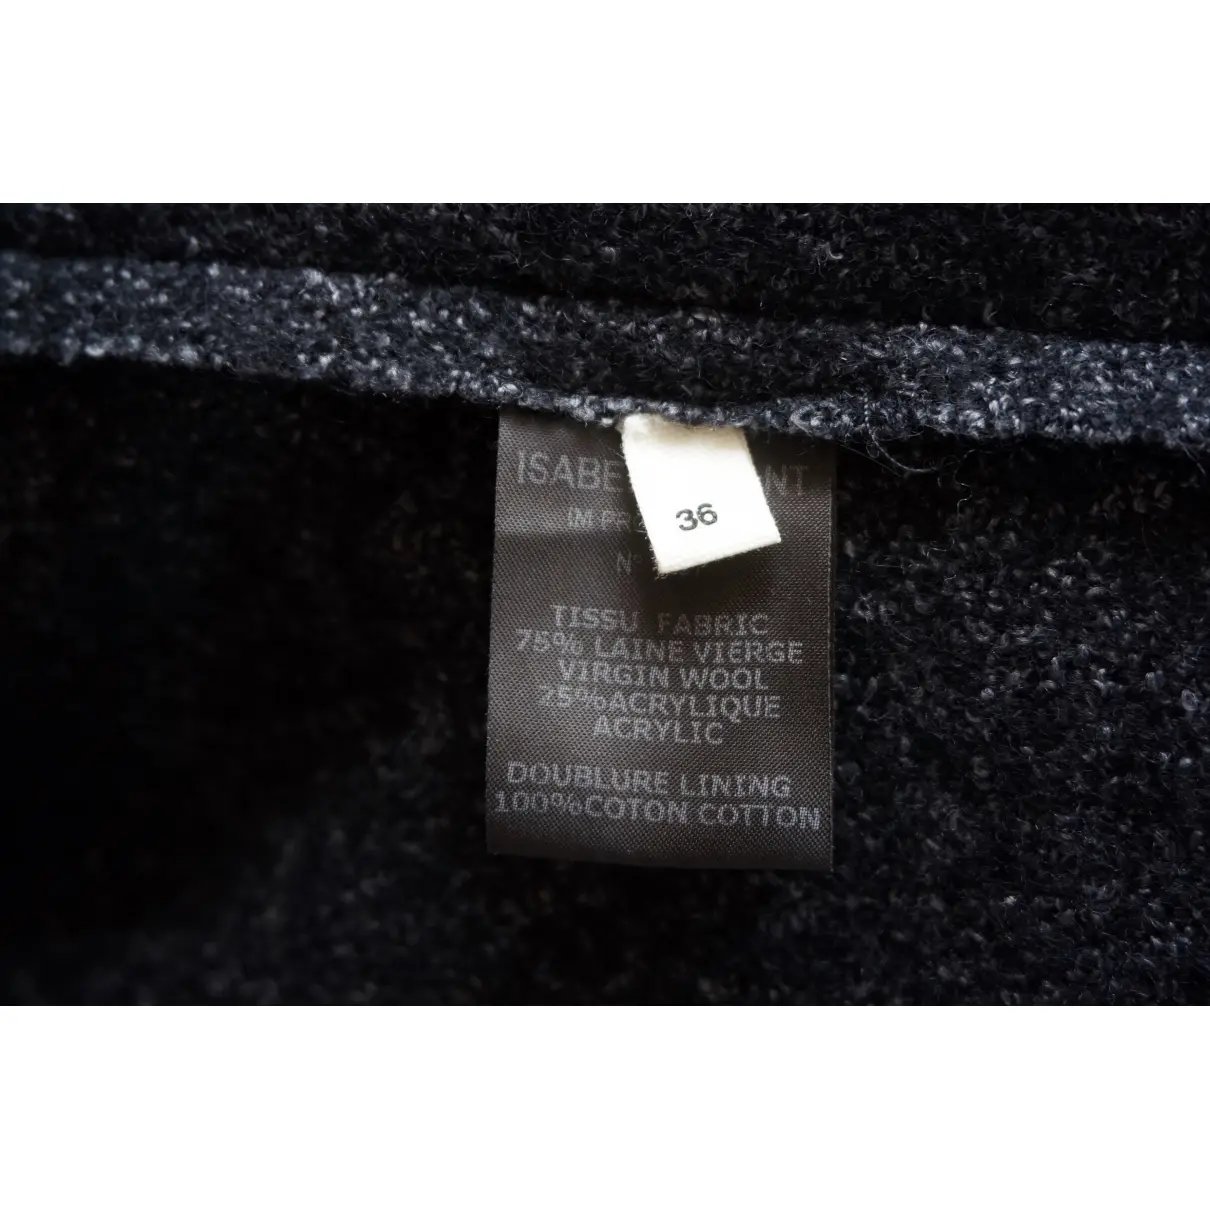 Luxury Isabel Marant Etoile Jackets Women